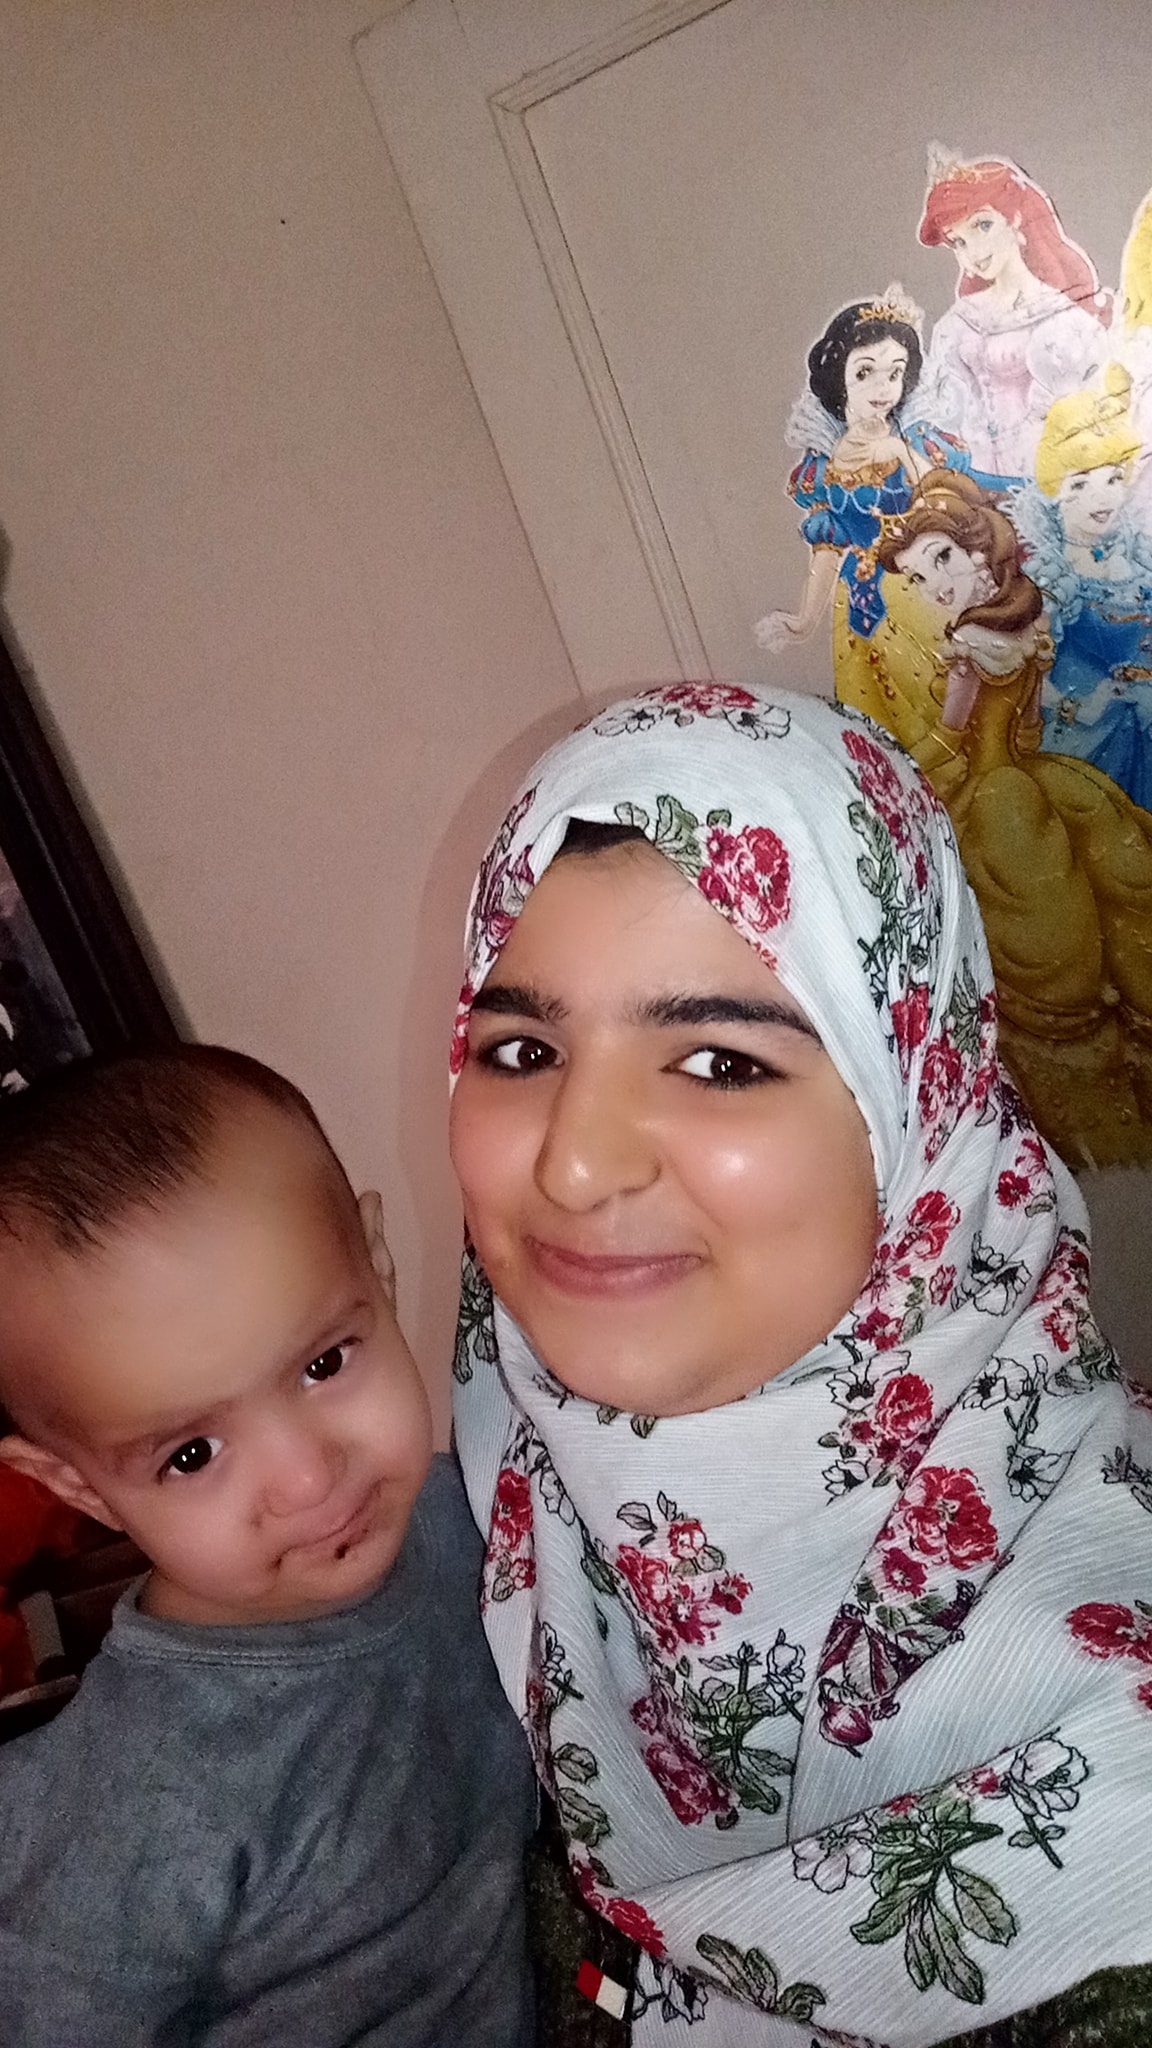 "بالصور" الداخلية تكشف لغز اختفاء 5 أولاد أشقاء منذ 20 يوم في شبرا الخيمة 9